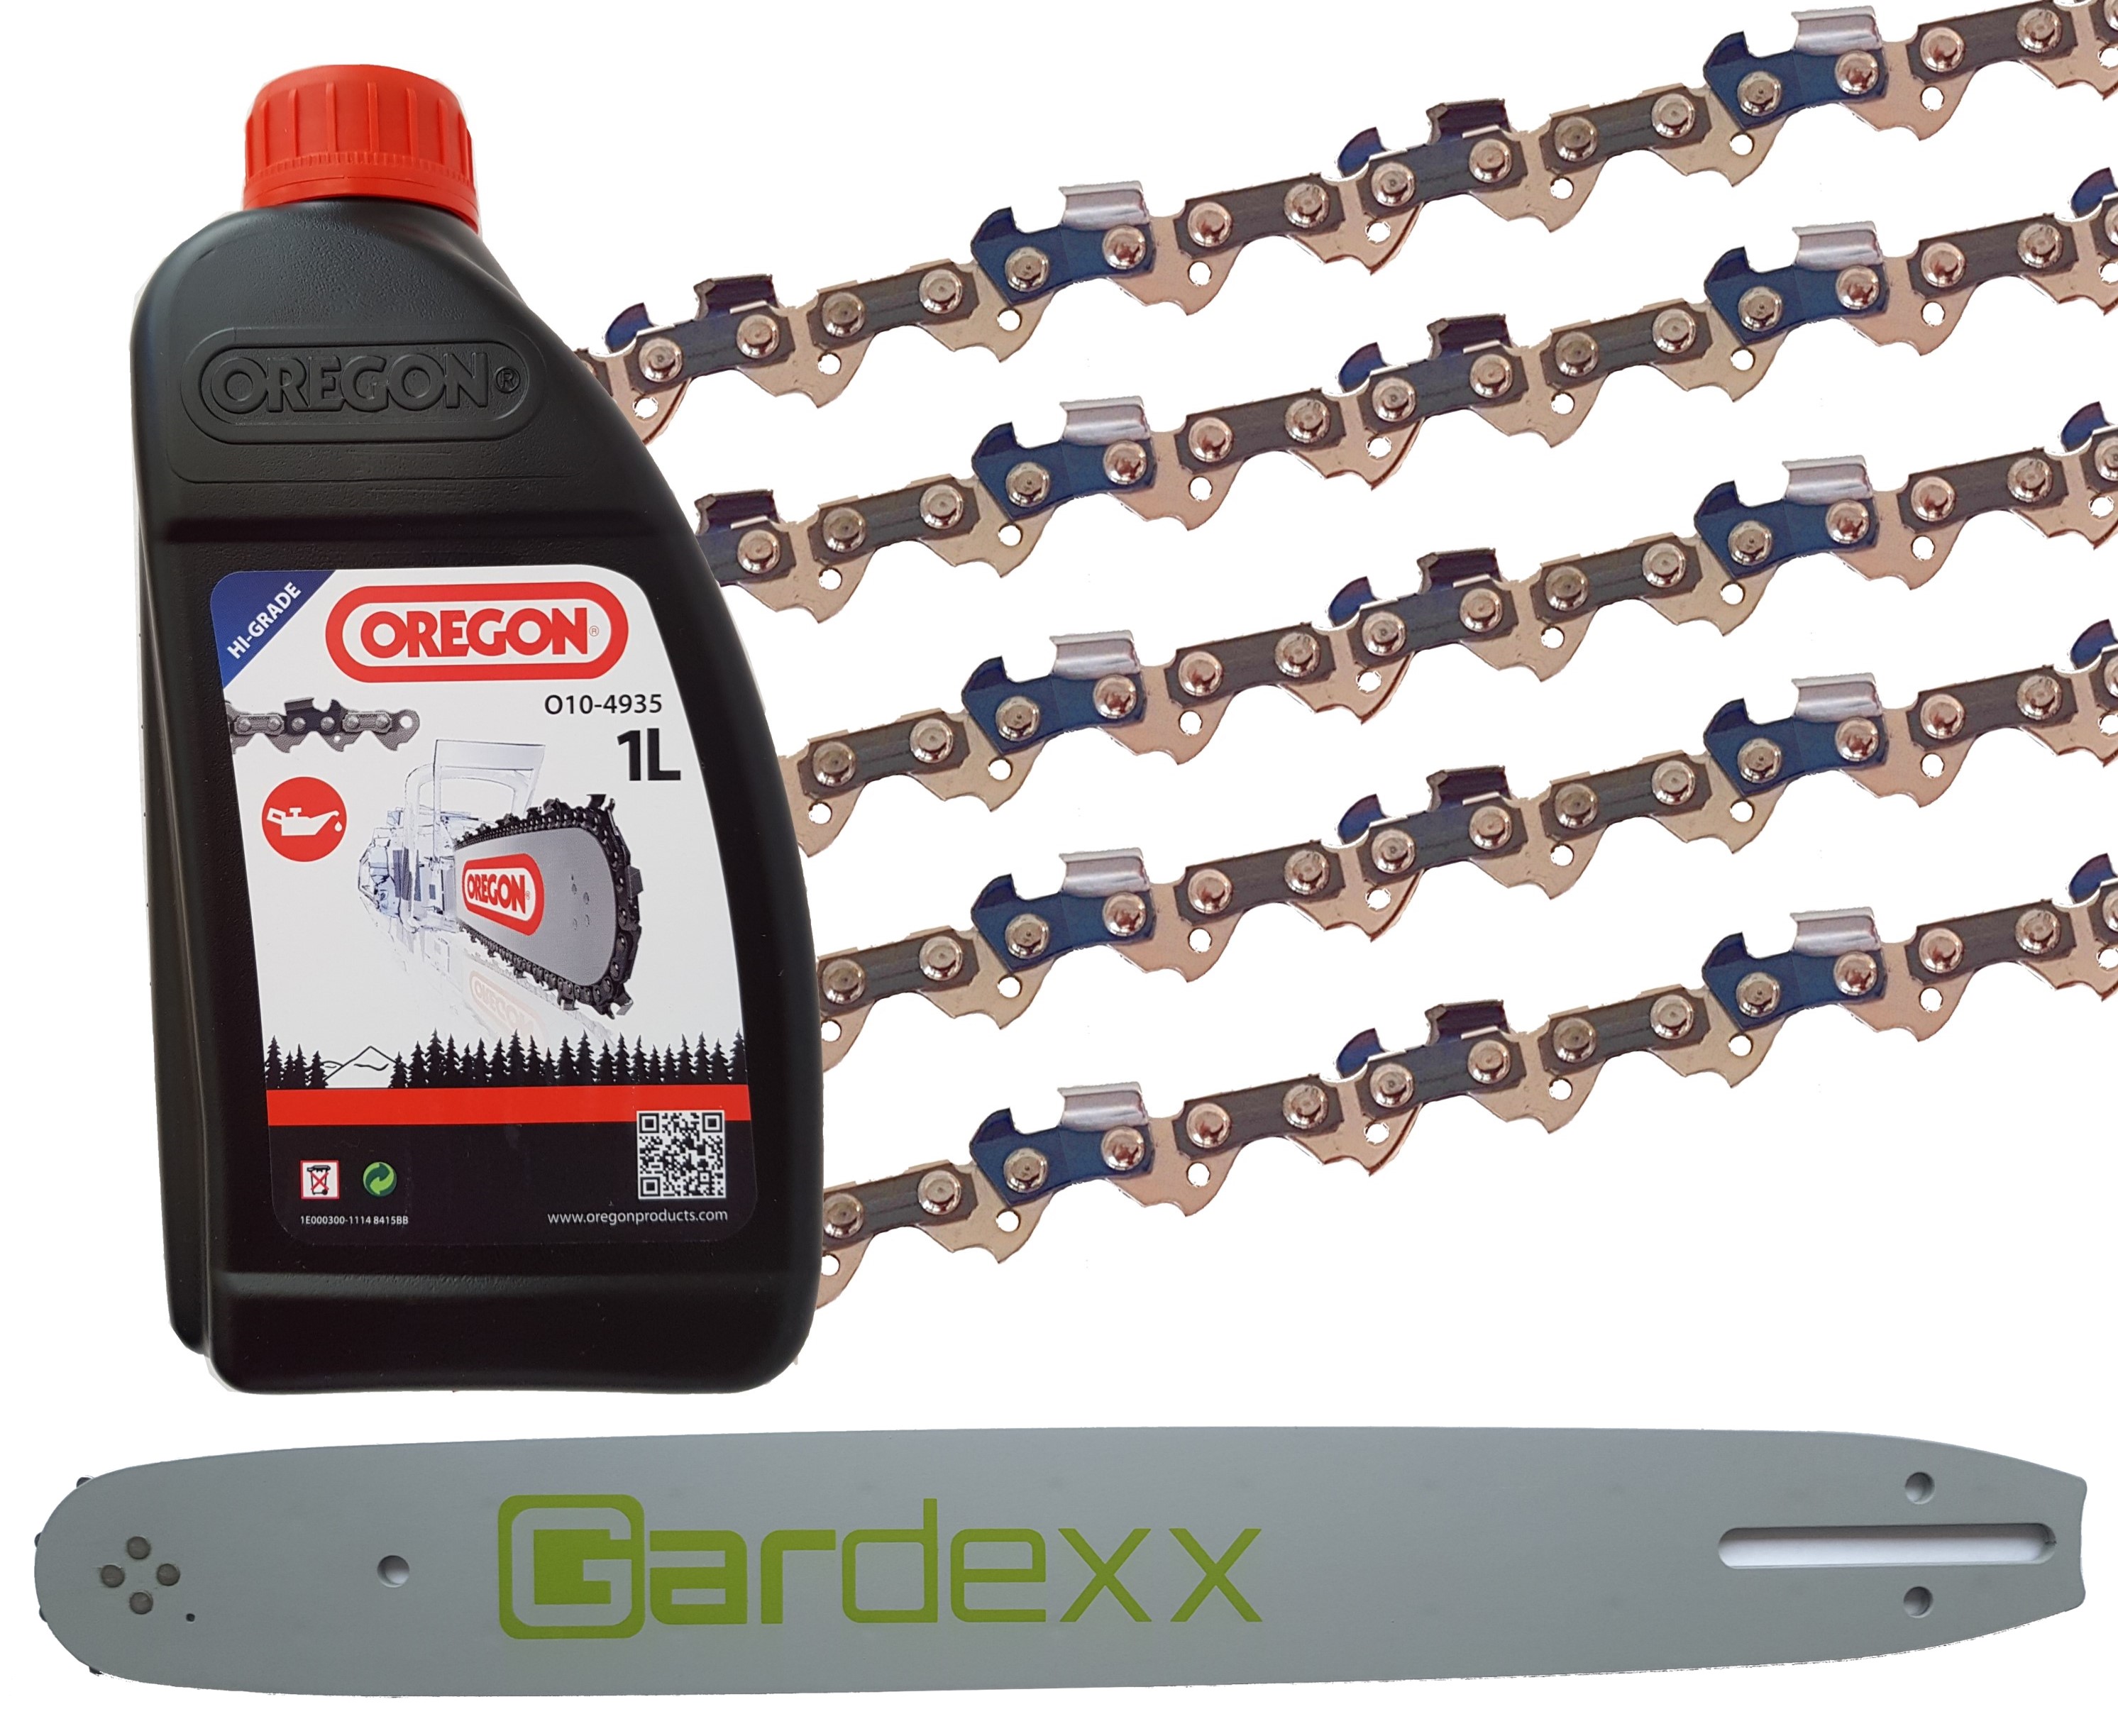 5 X Sägekette für Bosch AKE 35S + Gardexx Führungsschiene + 1 L OREGON Kettenöl